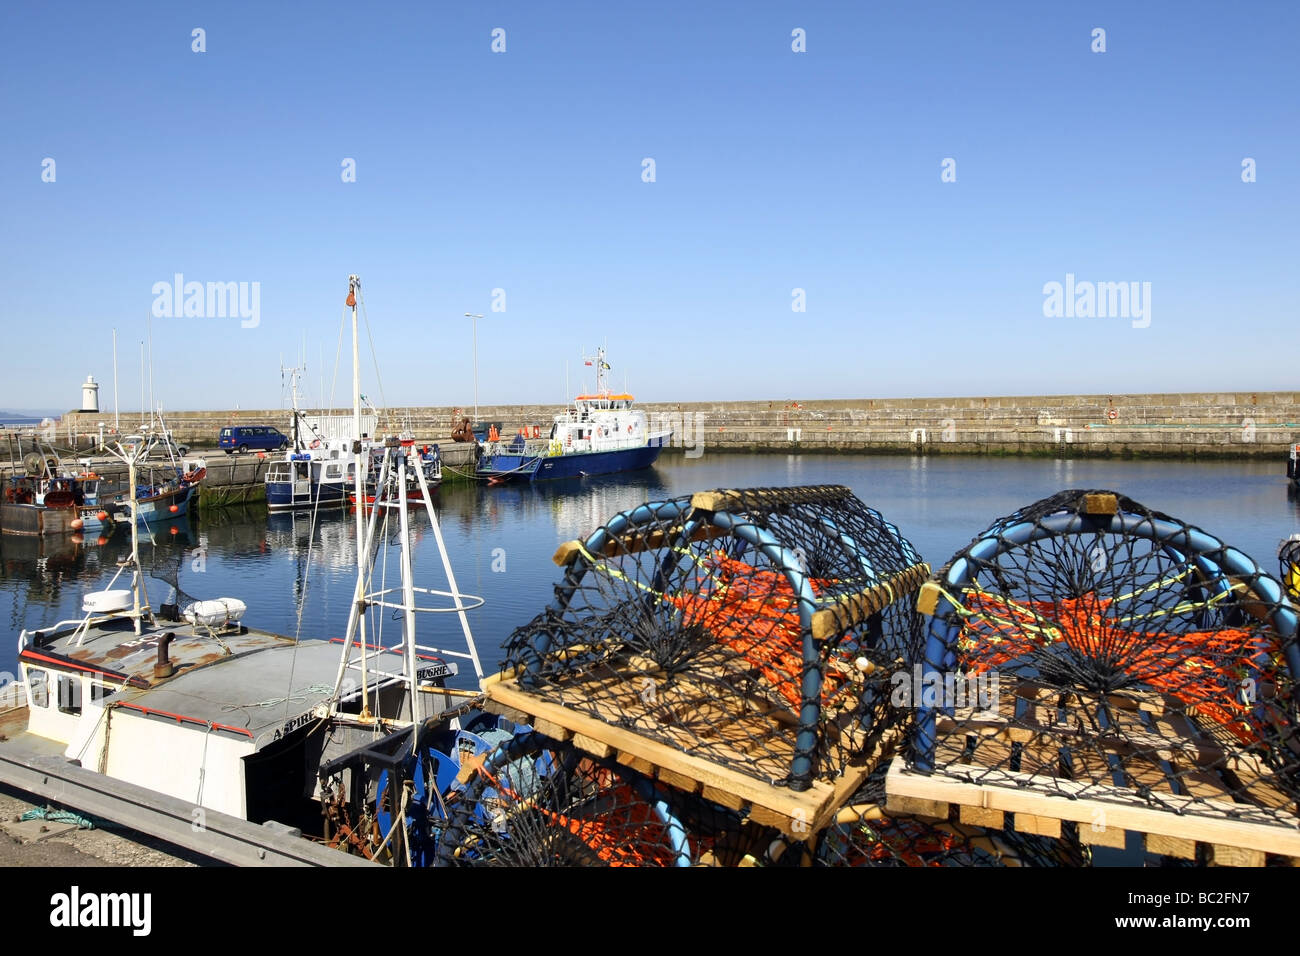 Le port de la ville de pêcheurs de Buckie, Aberdeenshire, Scotland, UK Banque D'Images